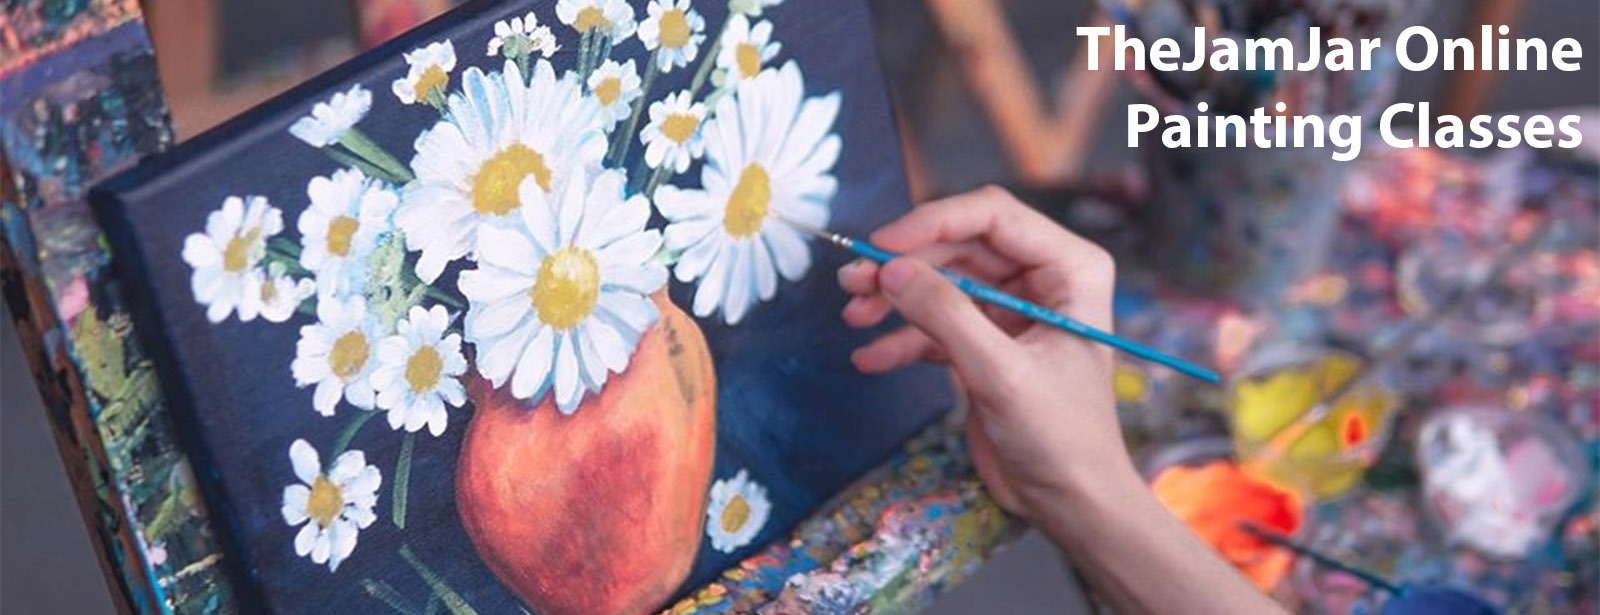 TheJamJar Online Painting Classes - Coming Soon in UAE